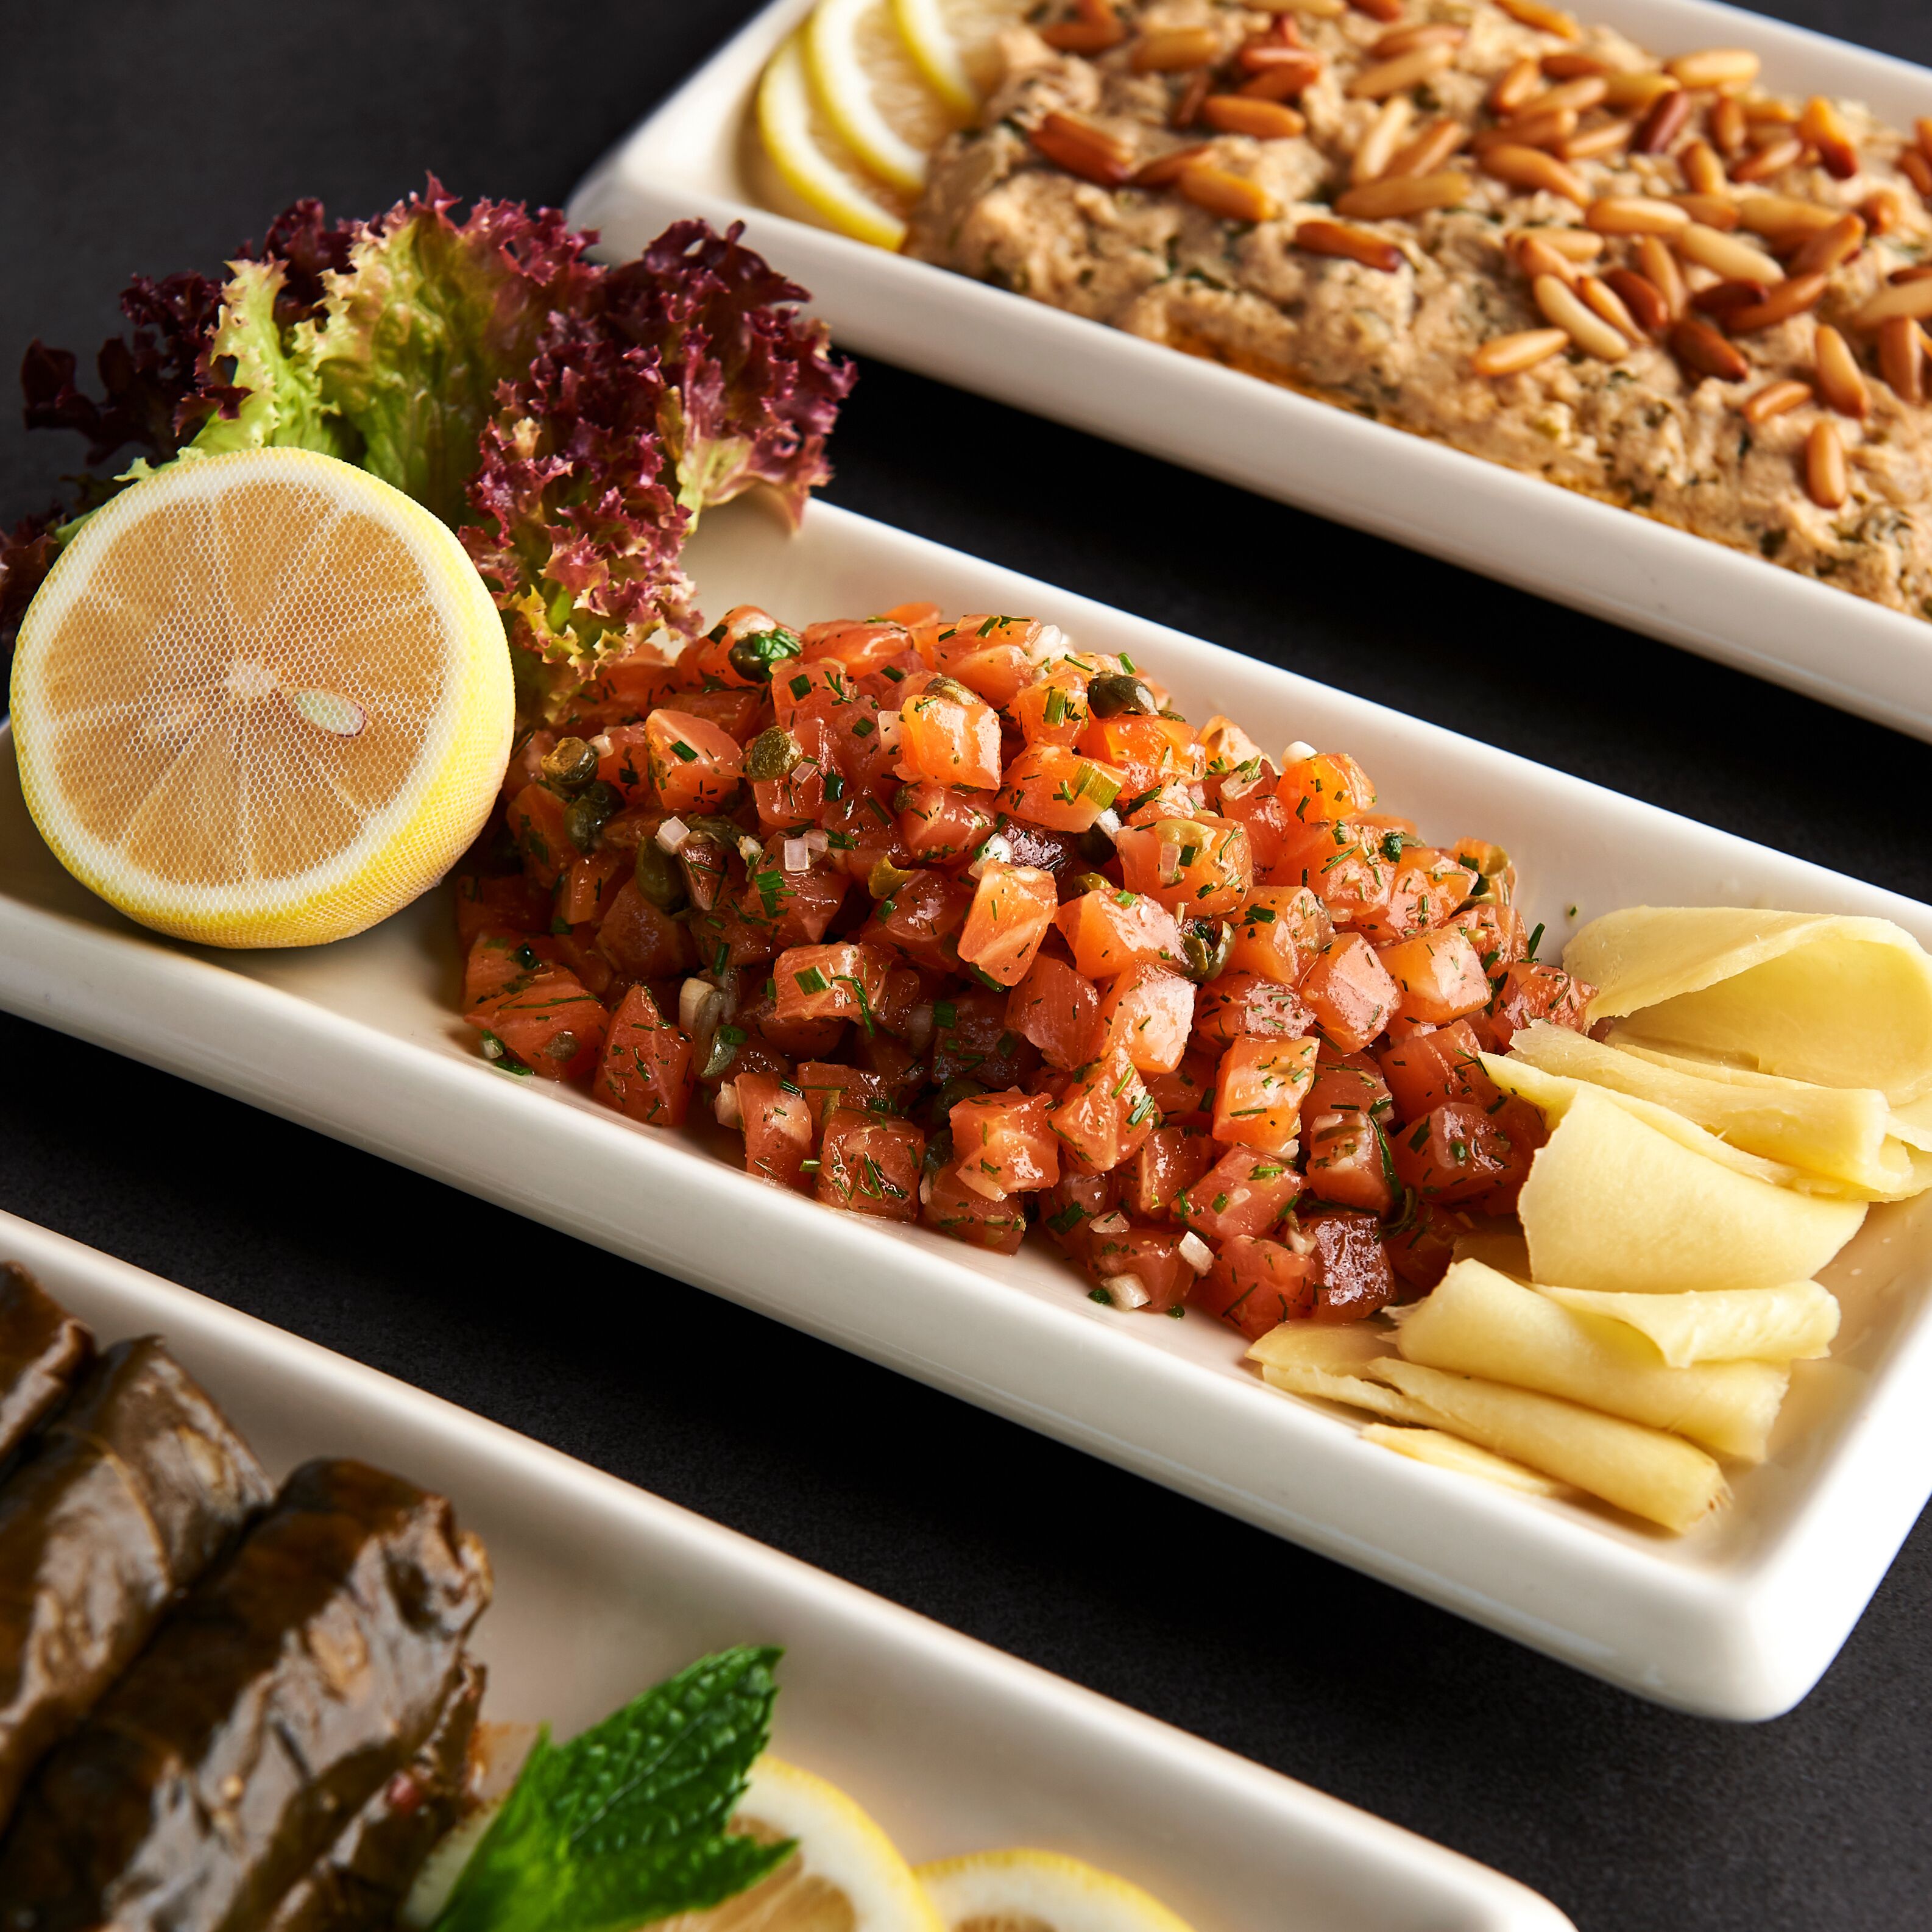 مطعم بابل لا مير يقدم تجربة طعام لبنانية حائزة على عدة جوائز